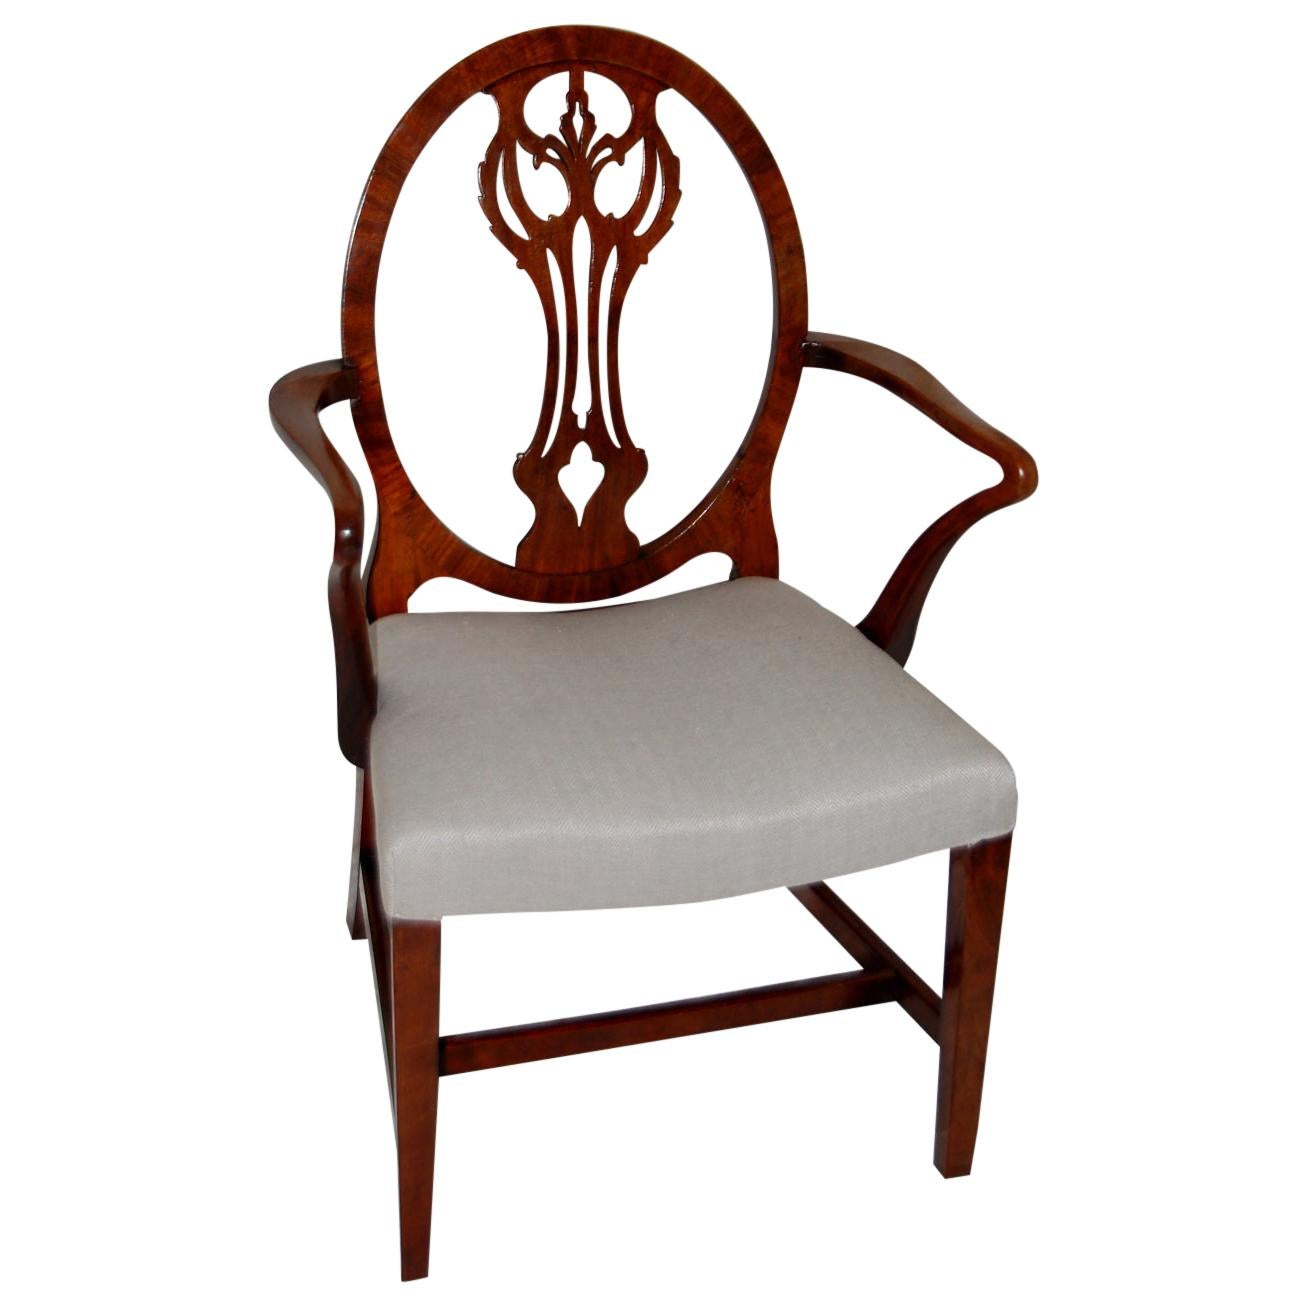 Englischer Hepplewhite-Sessel aus der georgianischen Periode mit ovaler Rückenlehne und geschnitztem Splat